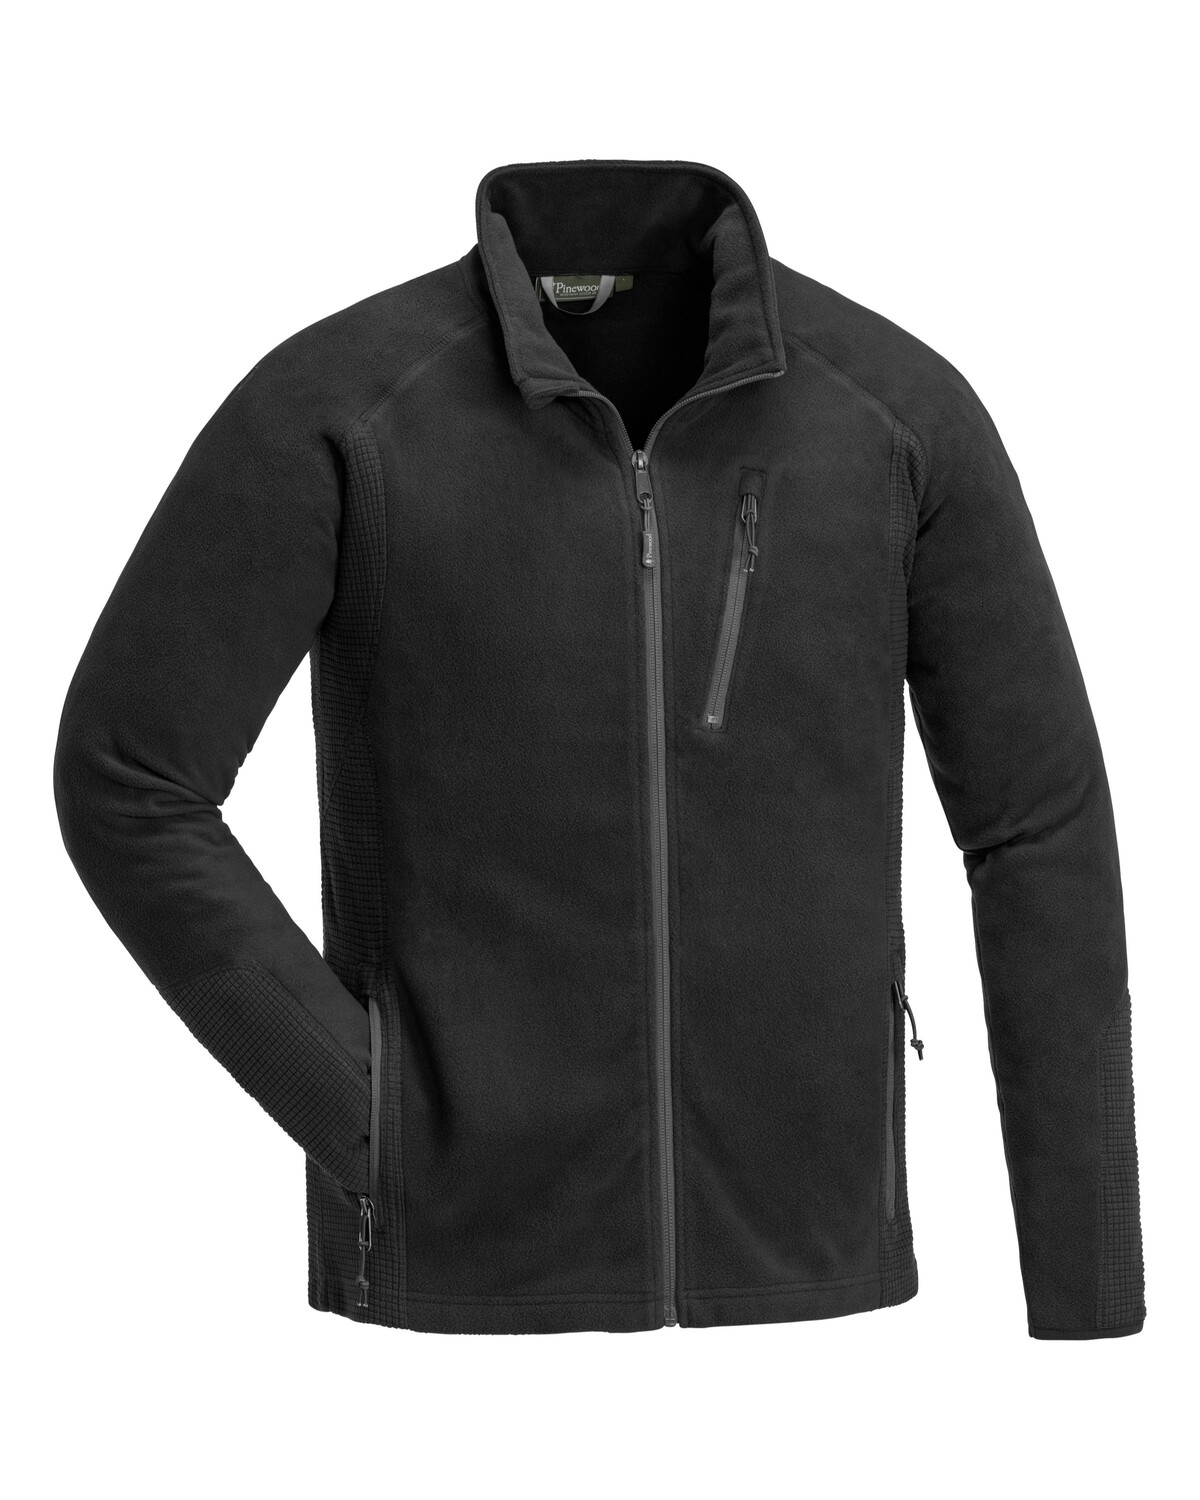  Флисовая куртка MICCO 5170-400